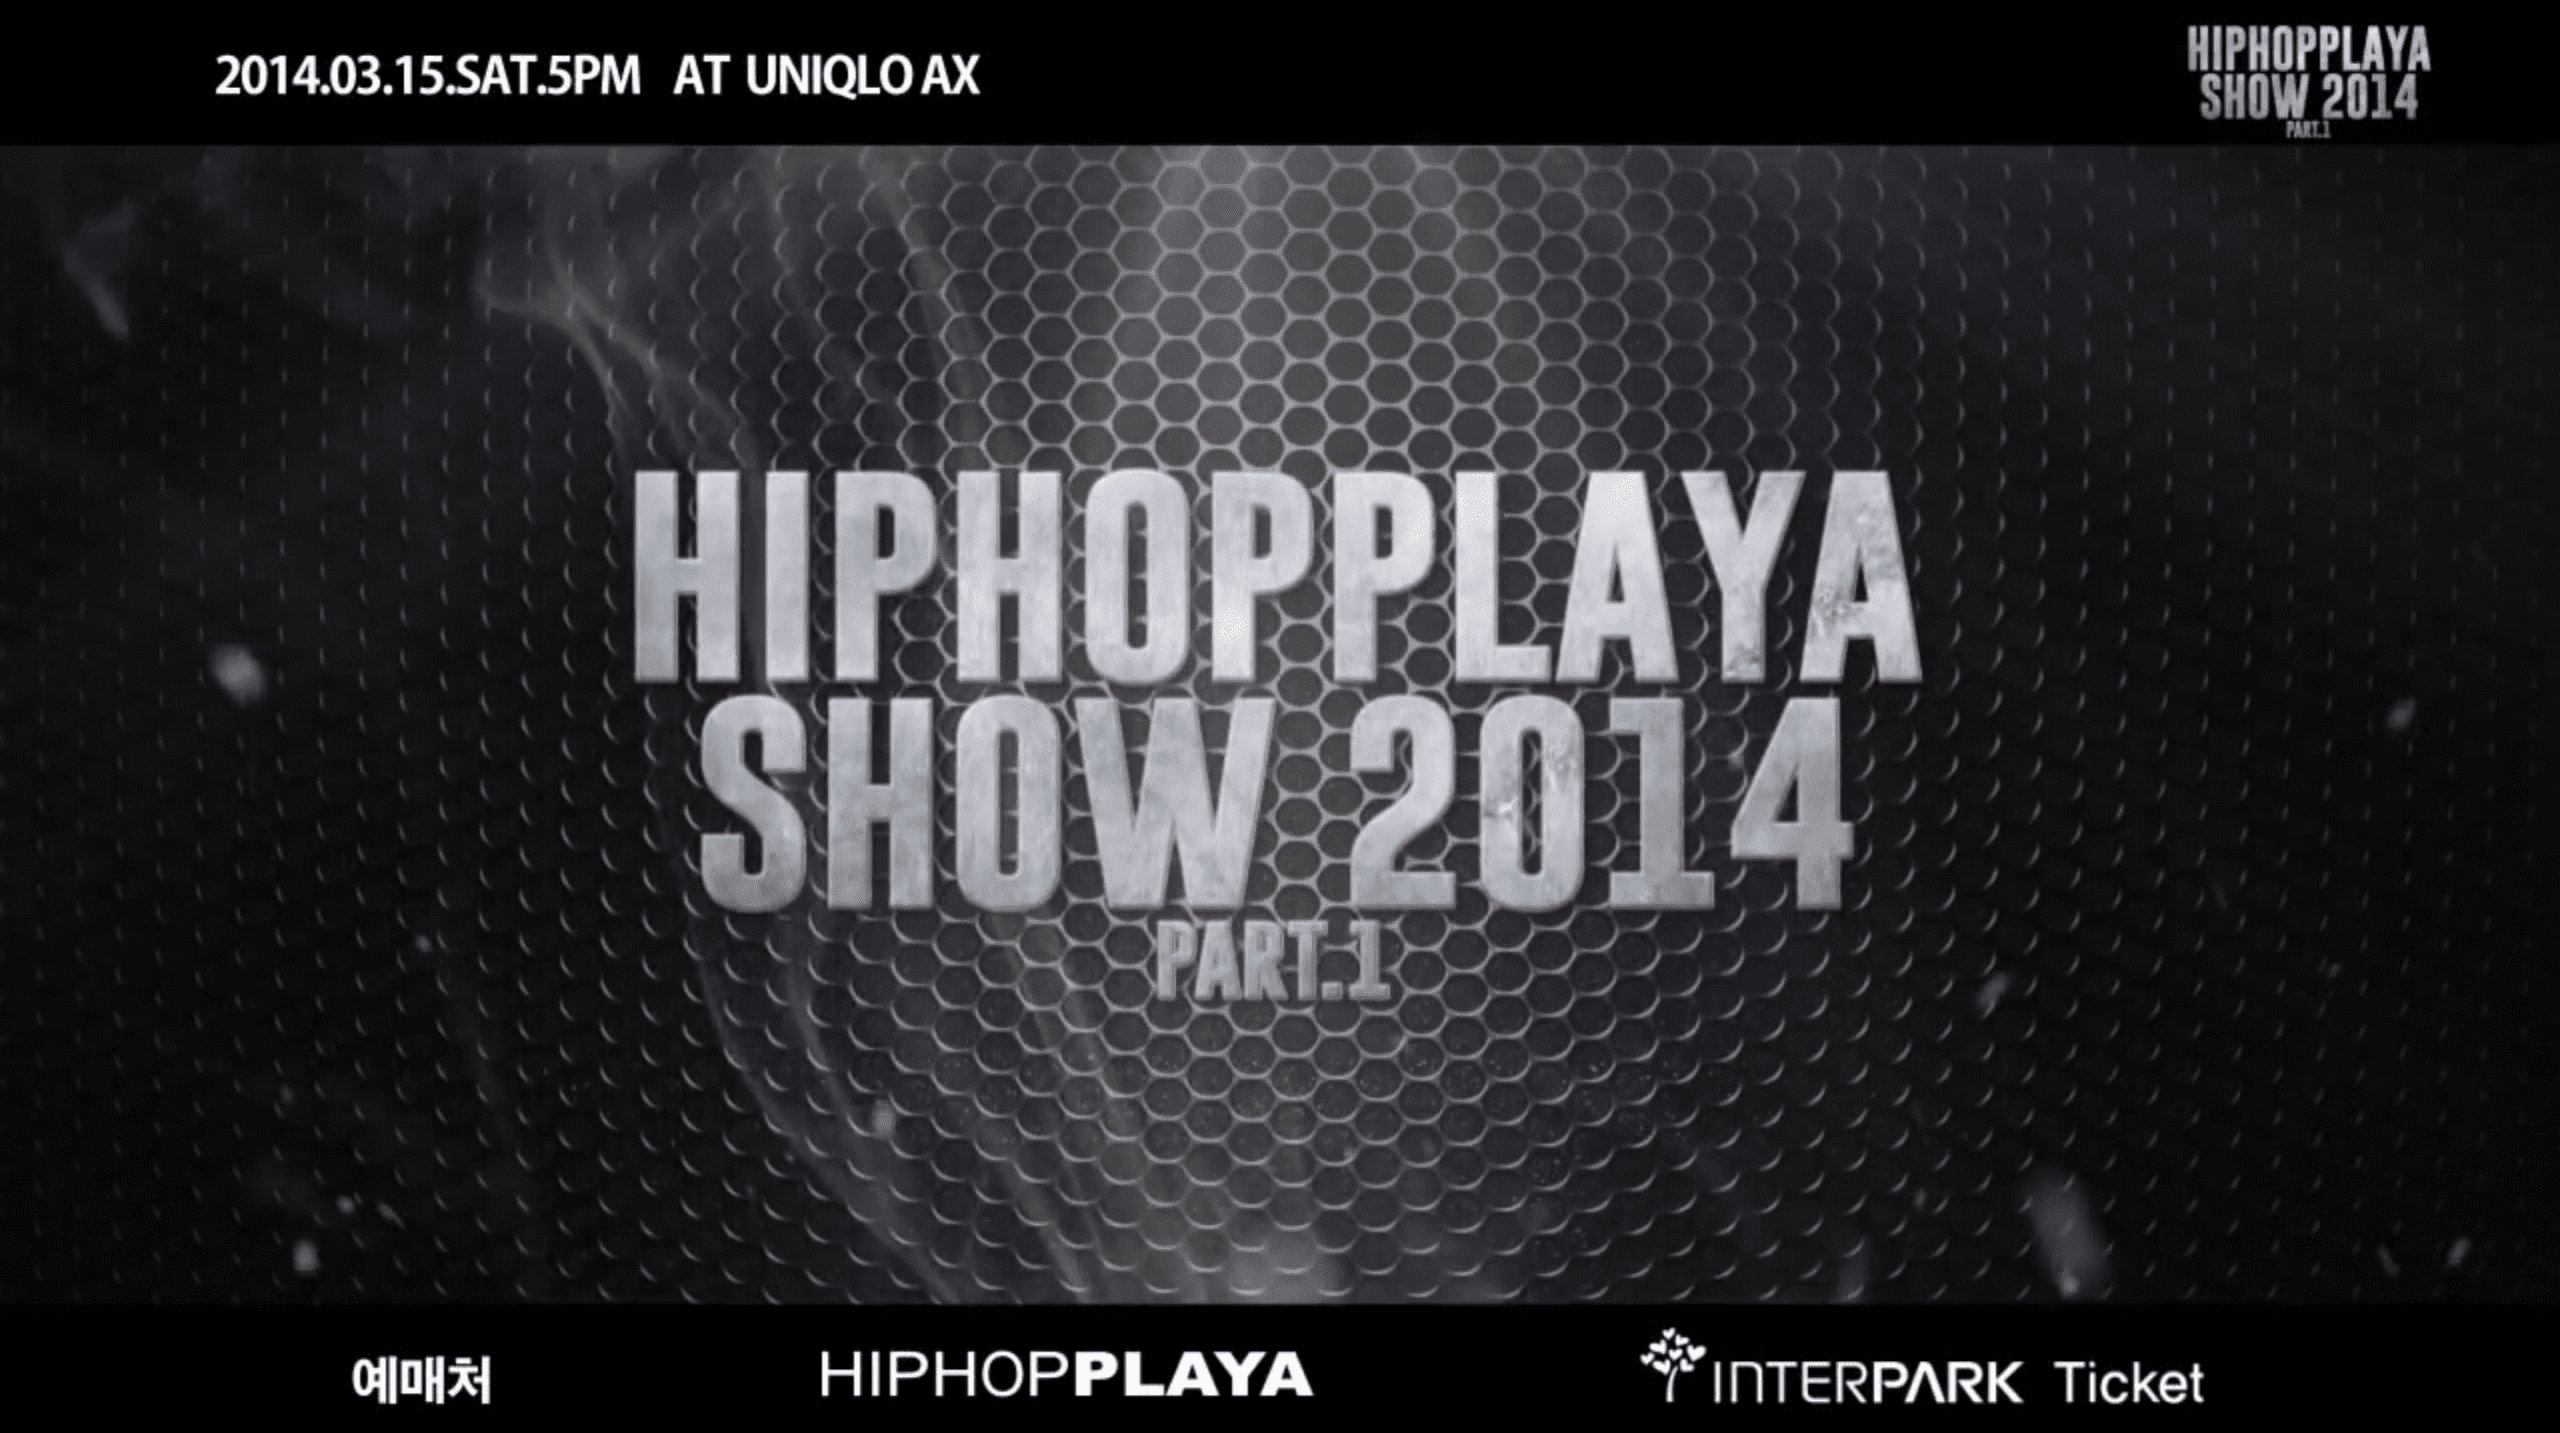 Hiphopplaya Show 2014 Part 1 poster